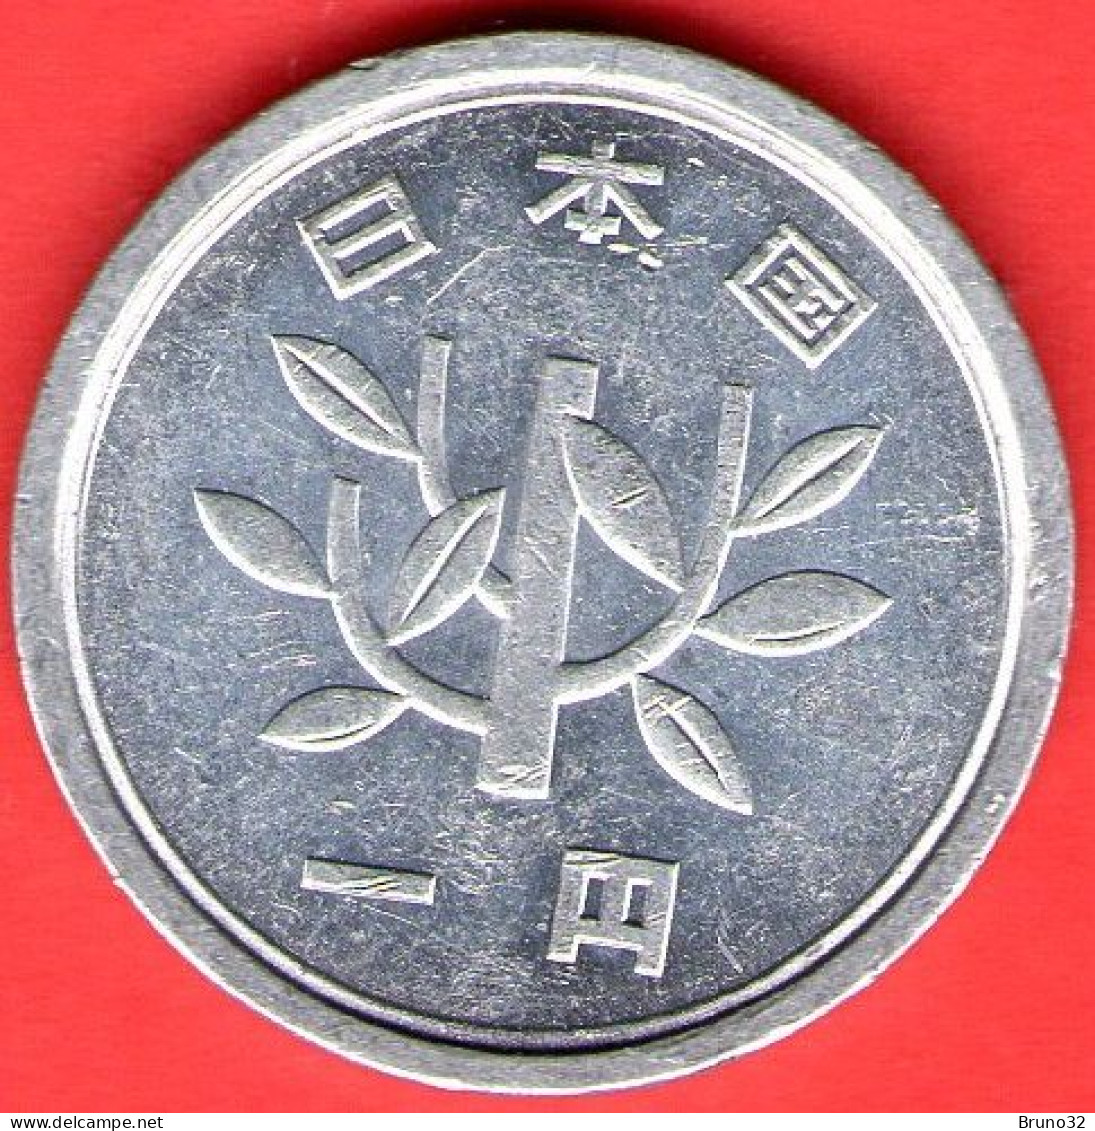 Giappone - Japan - Japon - 1 Yen - QFDC/aUNC - Come Da Foto - Japan